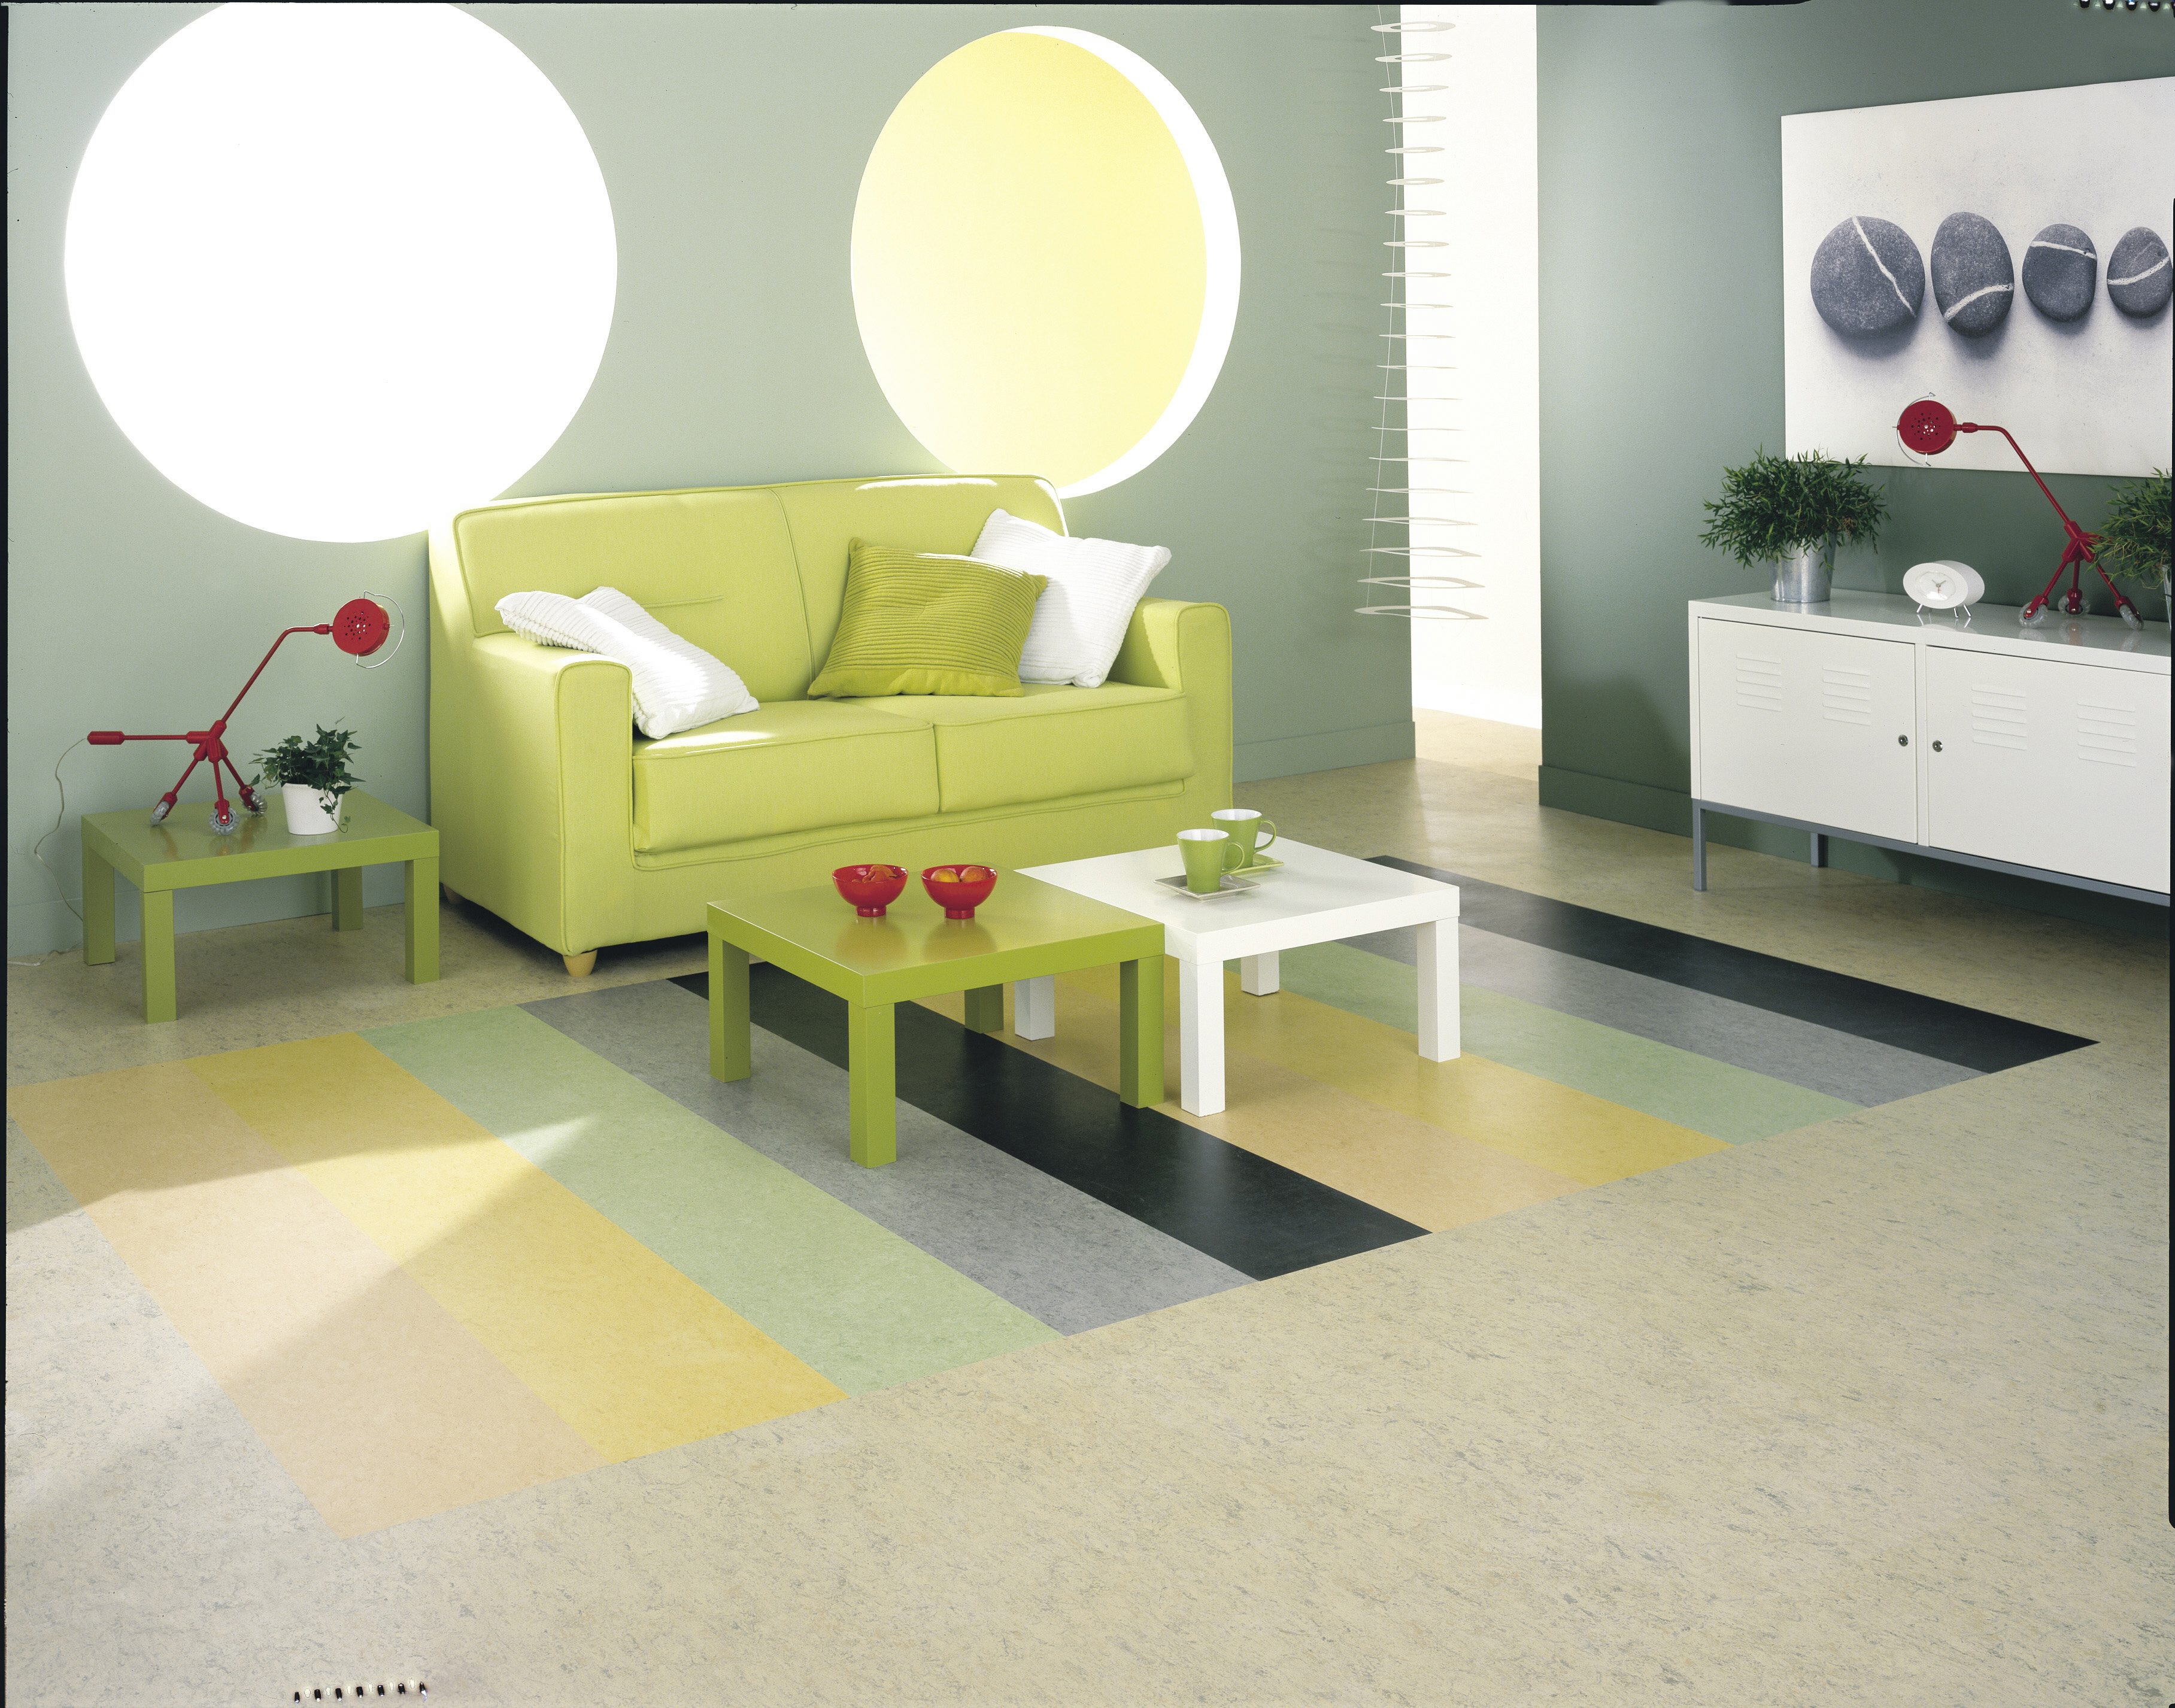 O podea din linoleum poate fi o alegere excelentă pentru orice cameră. Mituri false despre linoleum